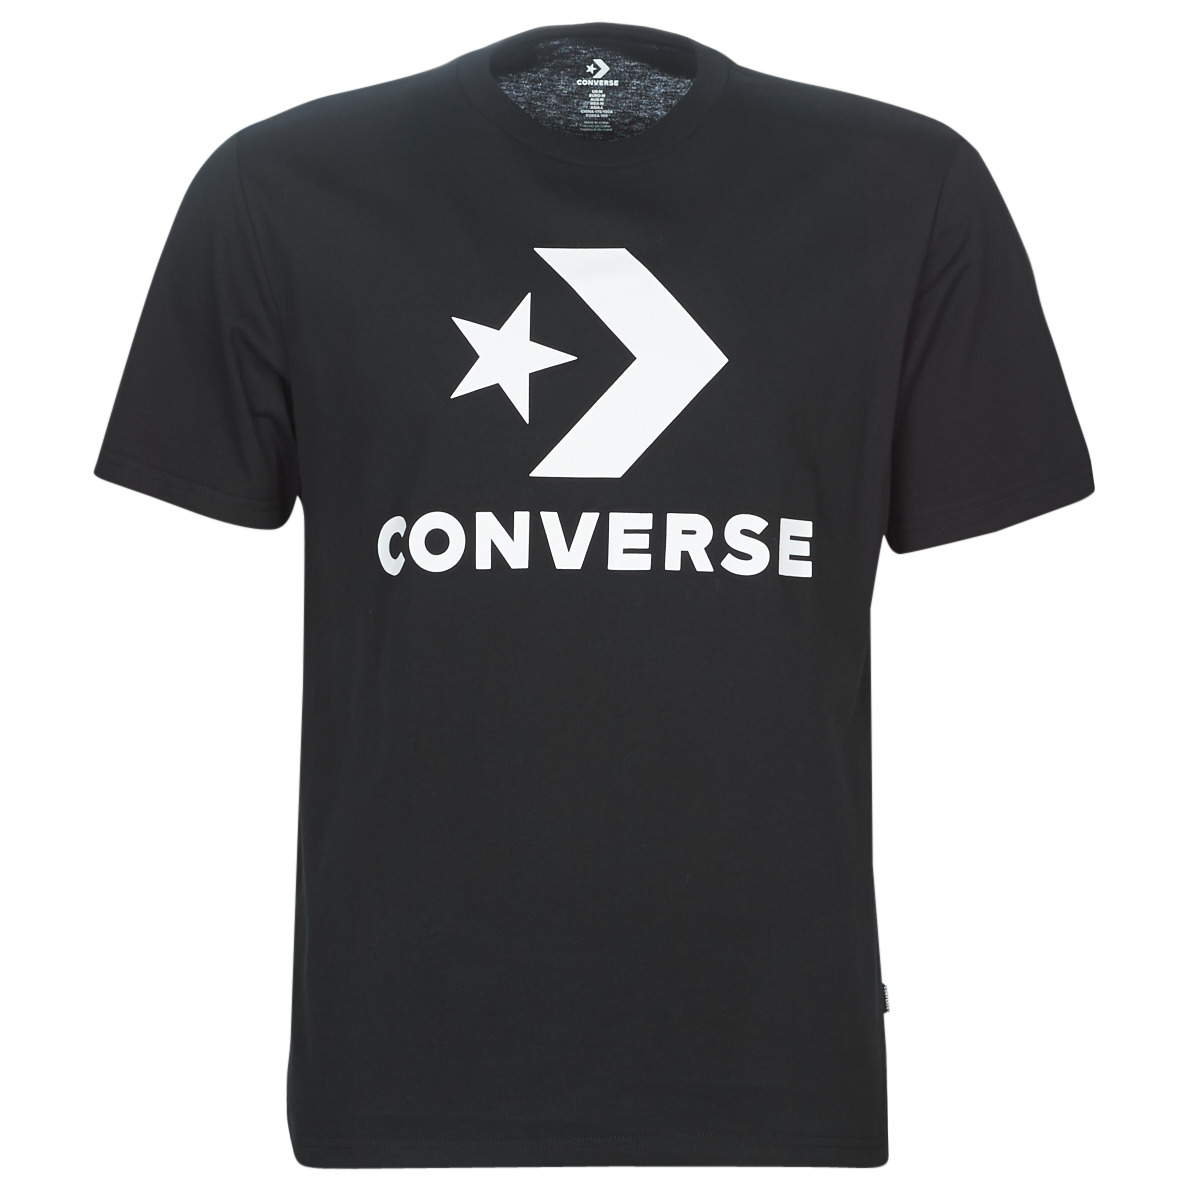 Textiel Heren T-shirts korte mouwen Converse STAR CHEVRON Zwart